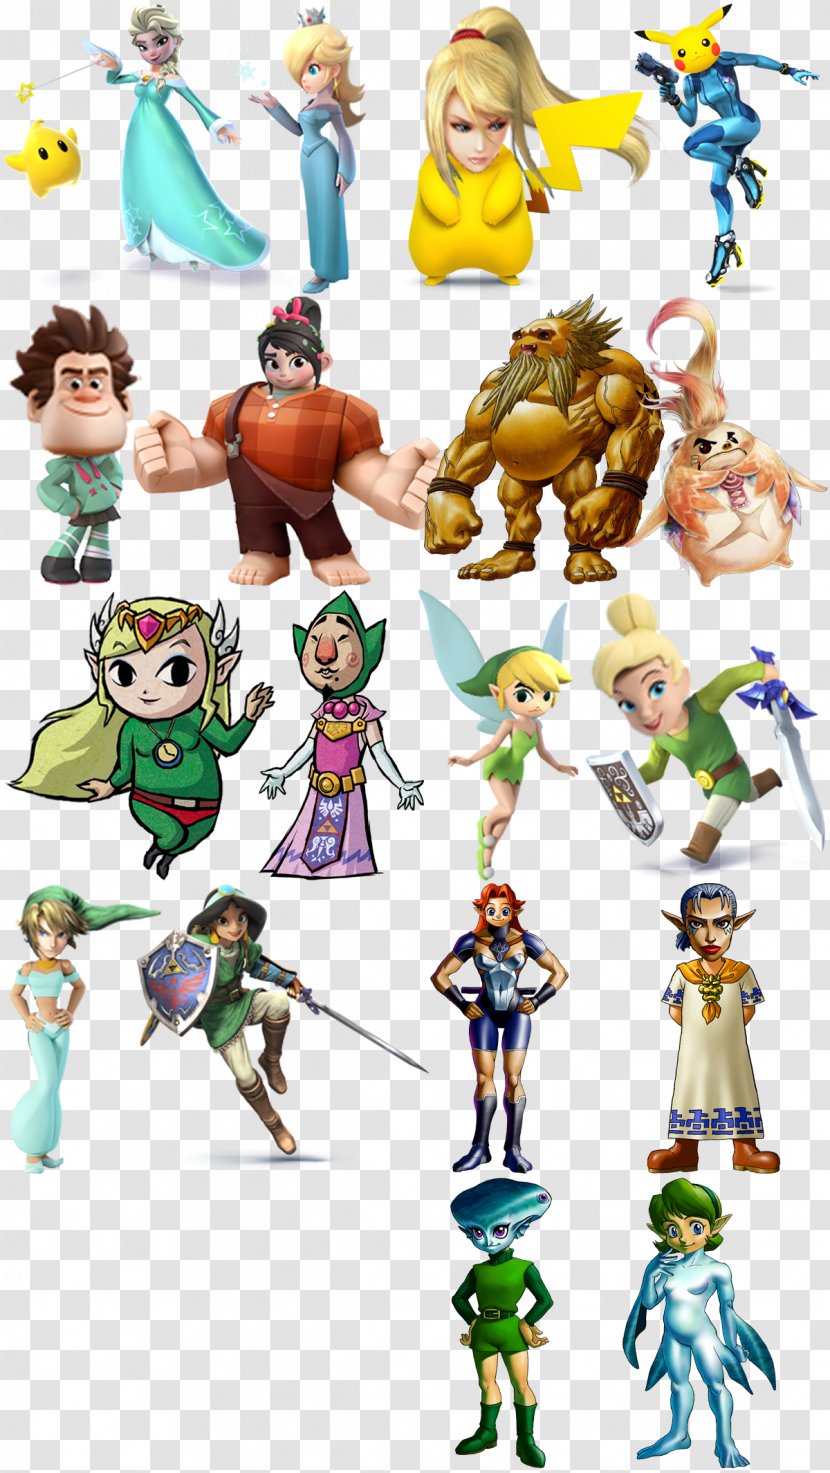 Link Super Smash Bros. For Nintendo 3DS And Wii U Samus Aran Princess Peach Rosalina - Wreck It Ralph Transparent PNG